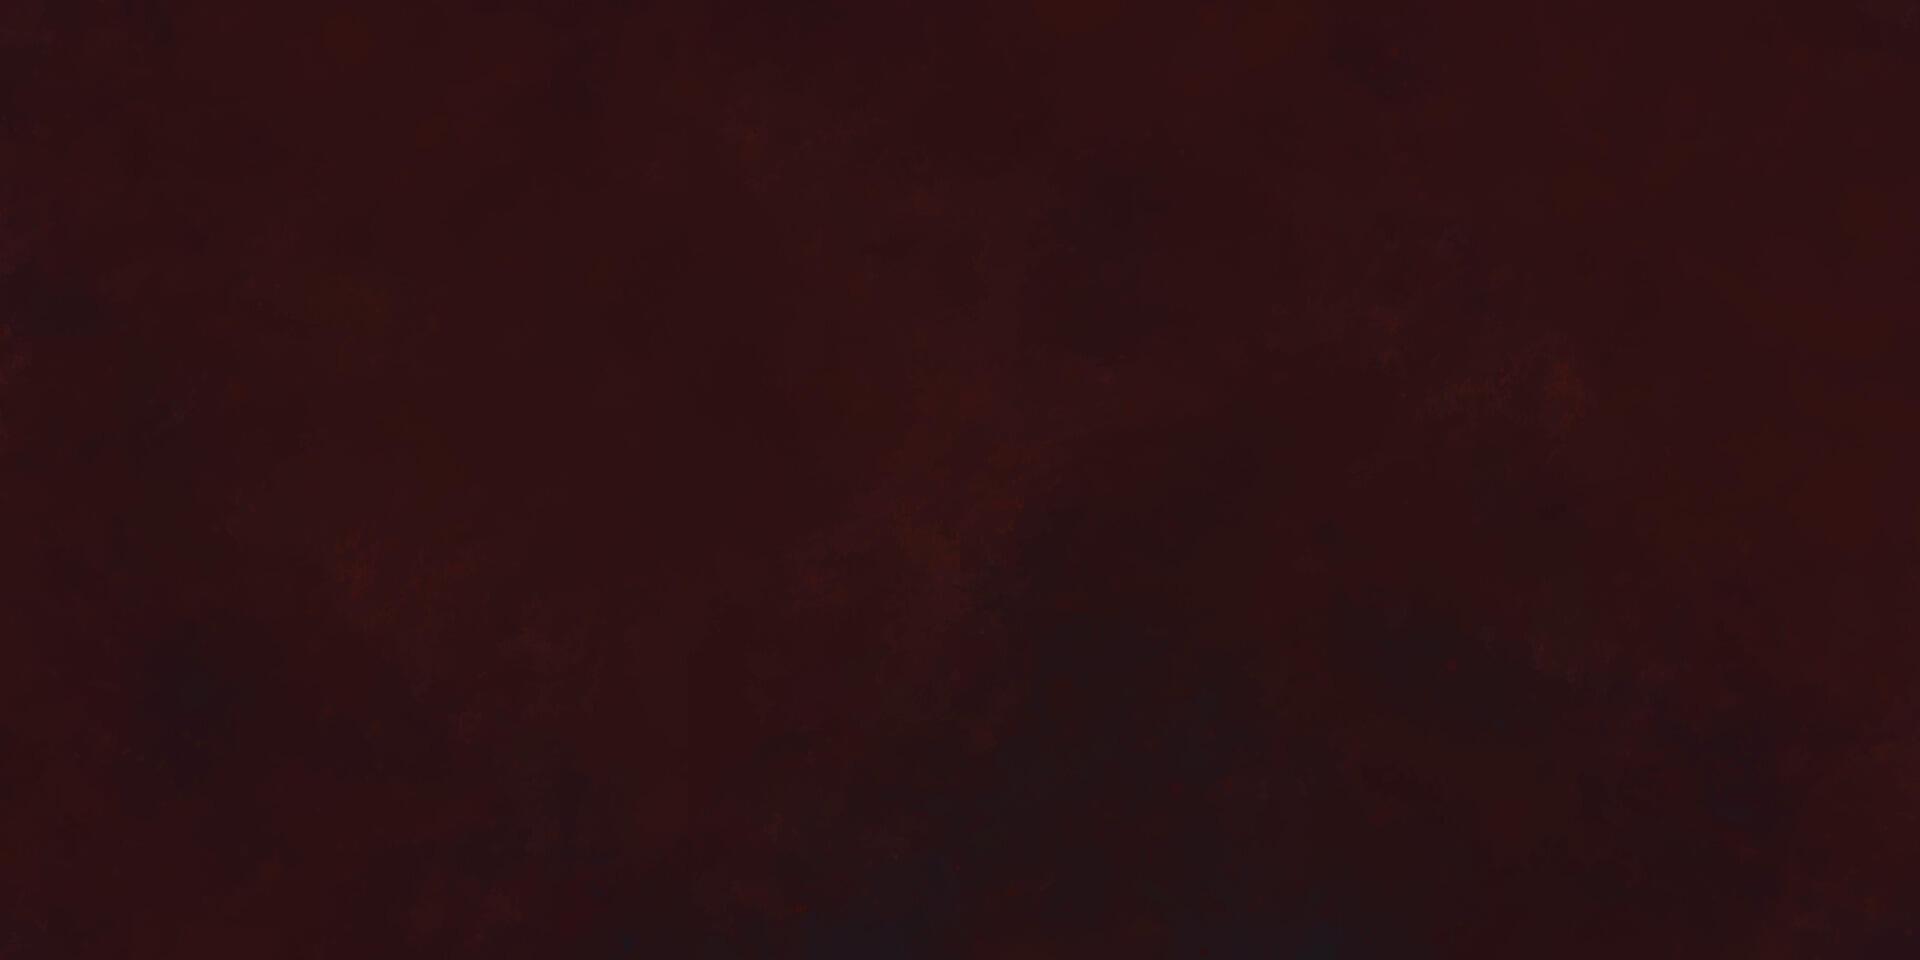 dunkel Grunge Textur Hintergrund. dunkel Explosion Hintergrund. abstrakt Aquarell Hintergrund Textur. schwarz und rot schmutzig Jahrgang Hintergrund. dunkel grungy rot Hintergrund vektor